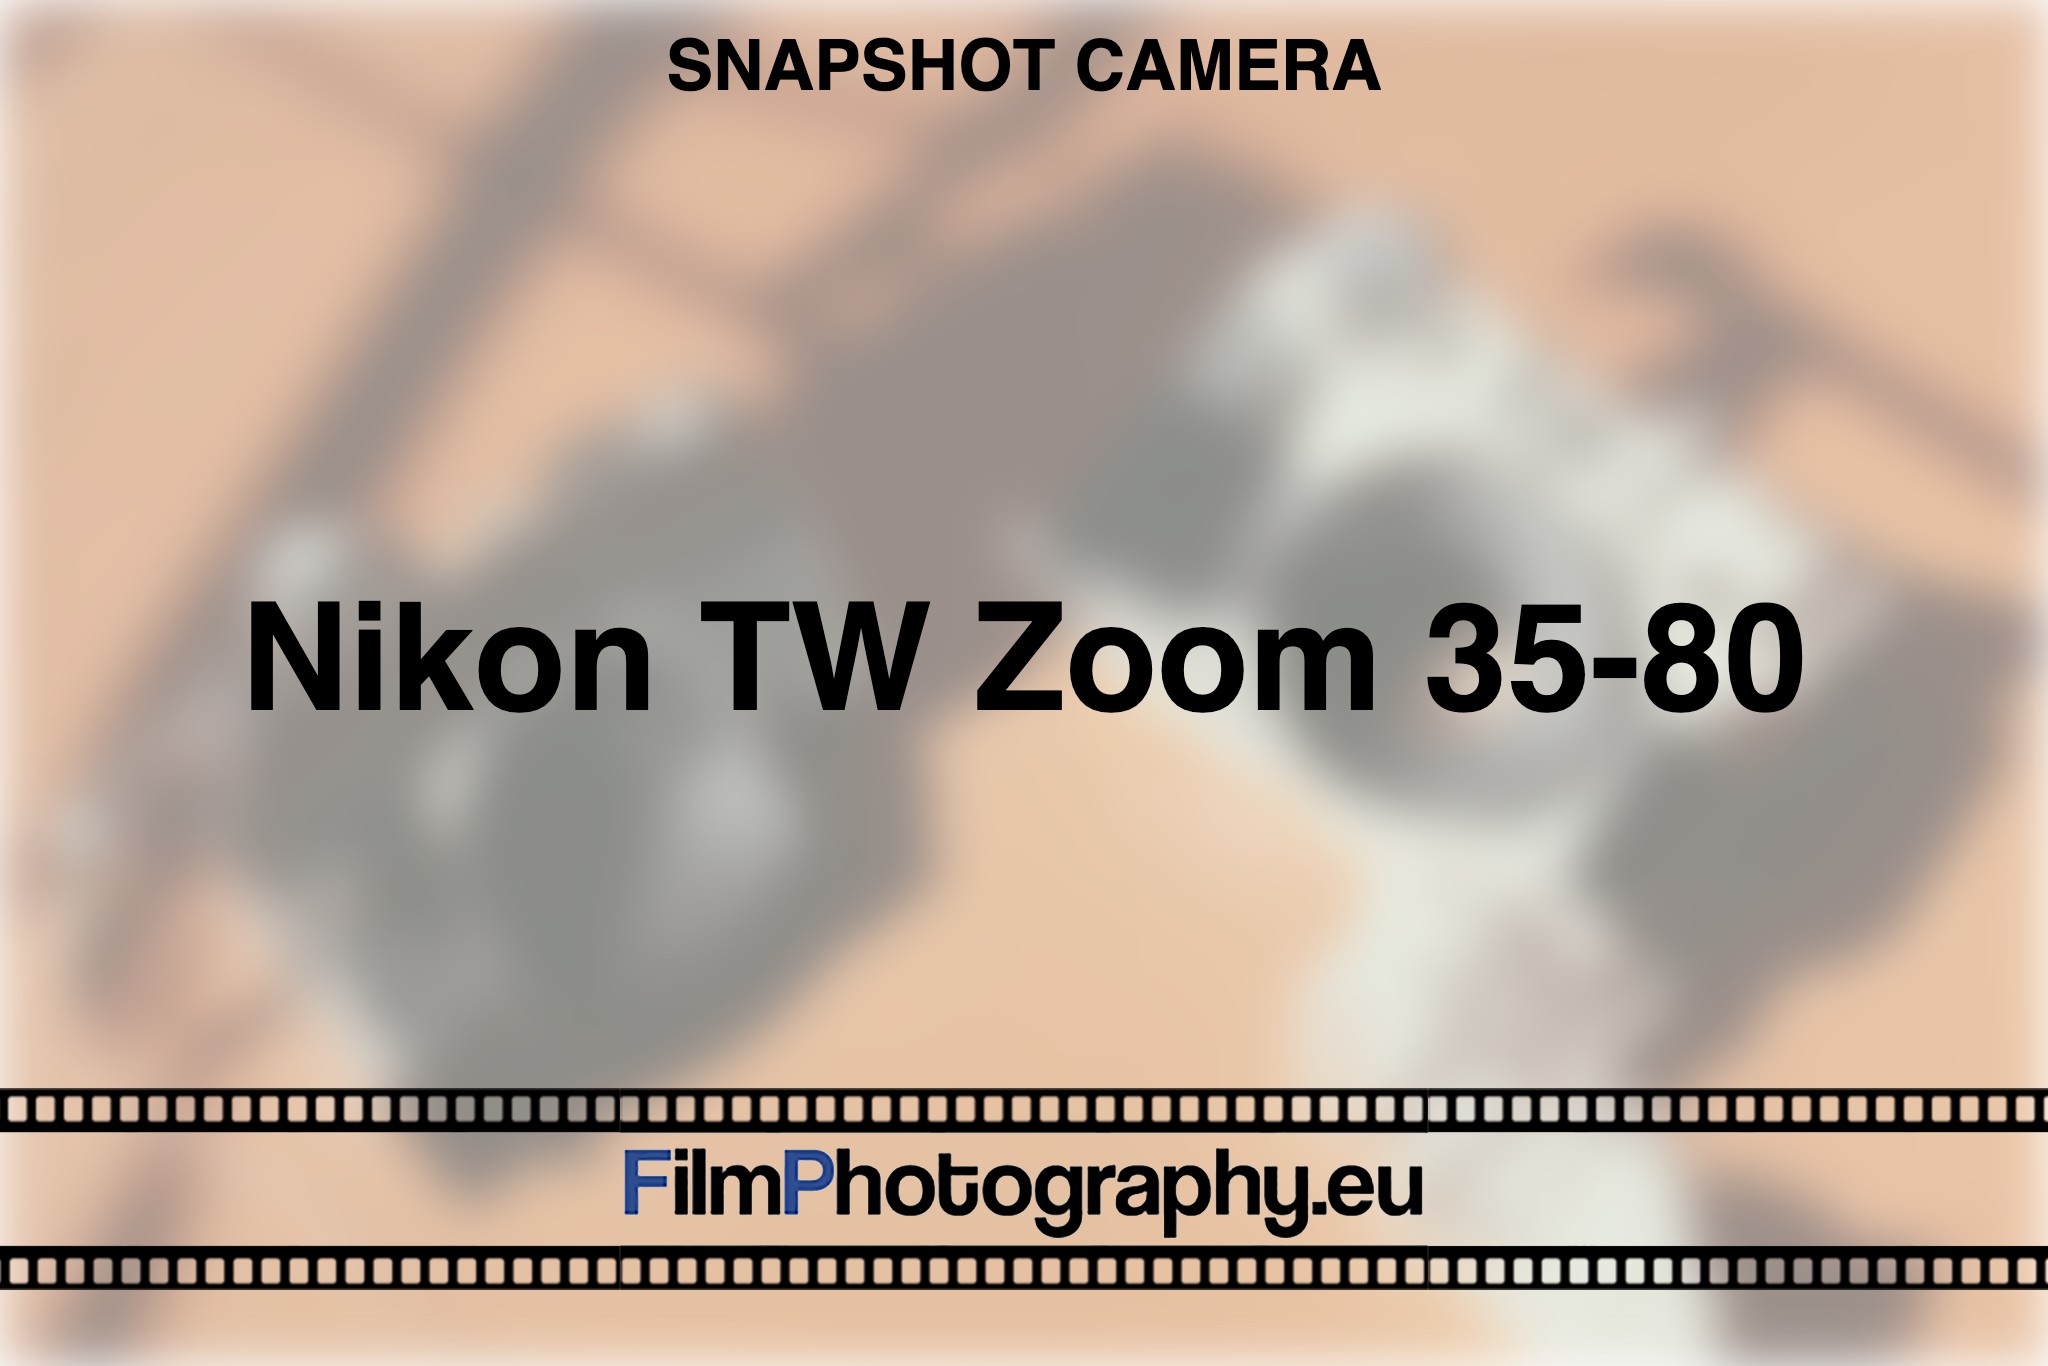 nikon-tw-zoom-35-80-snapshot-camera-bnv